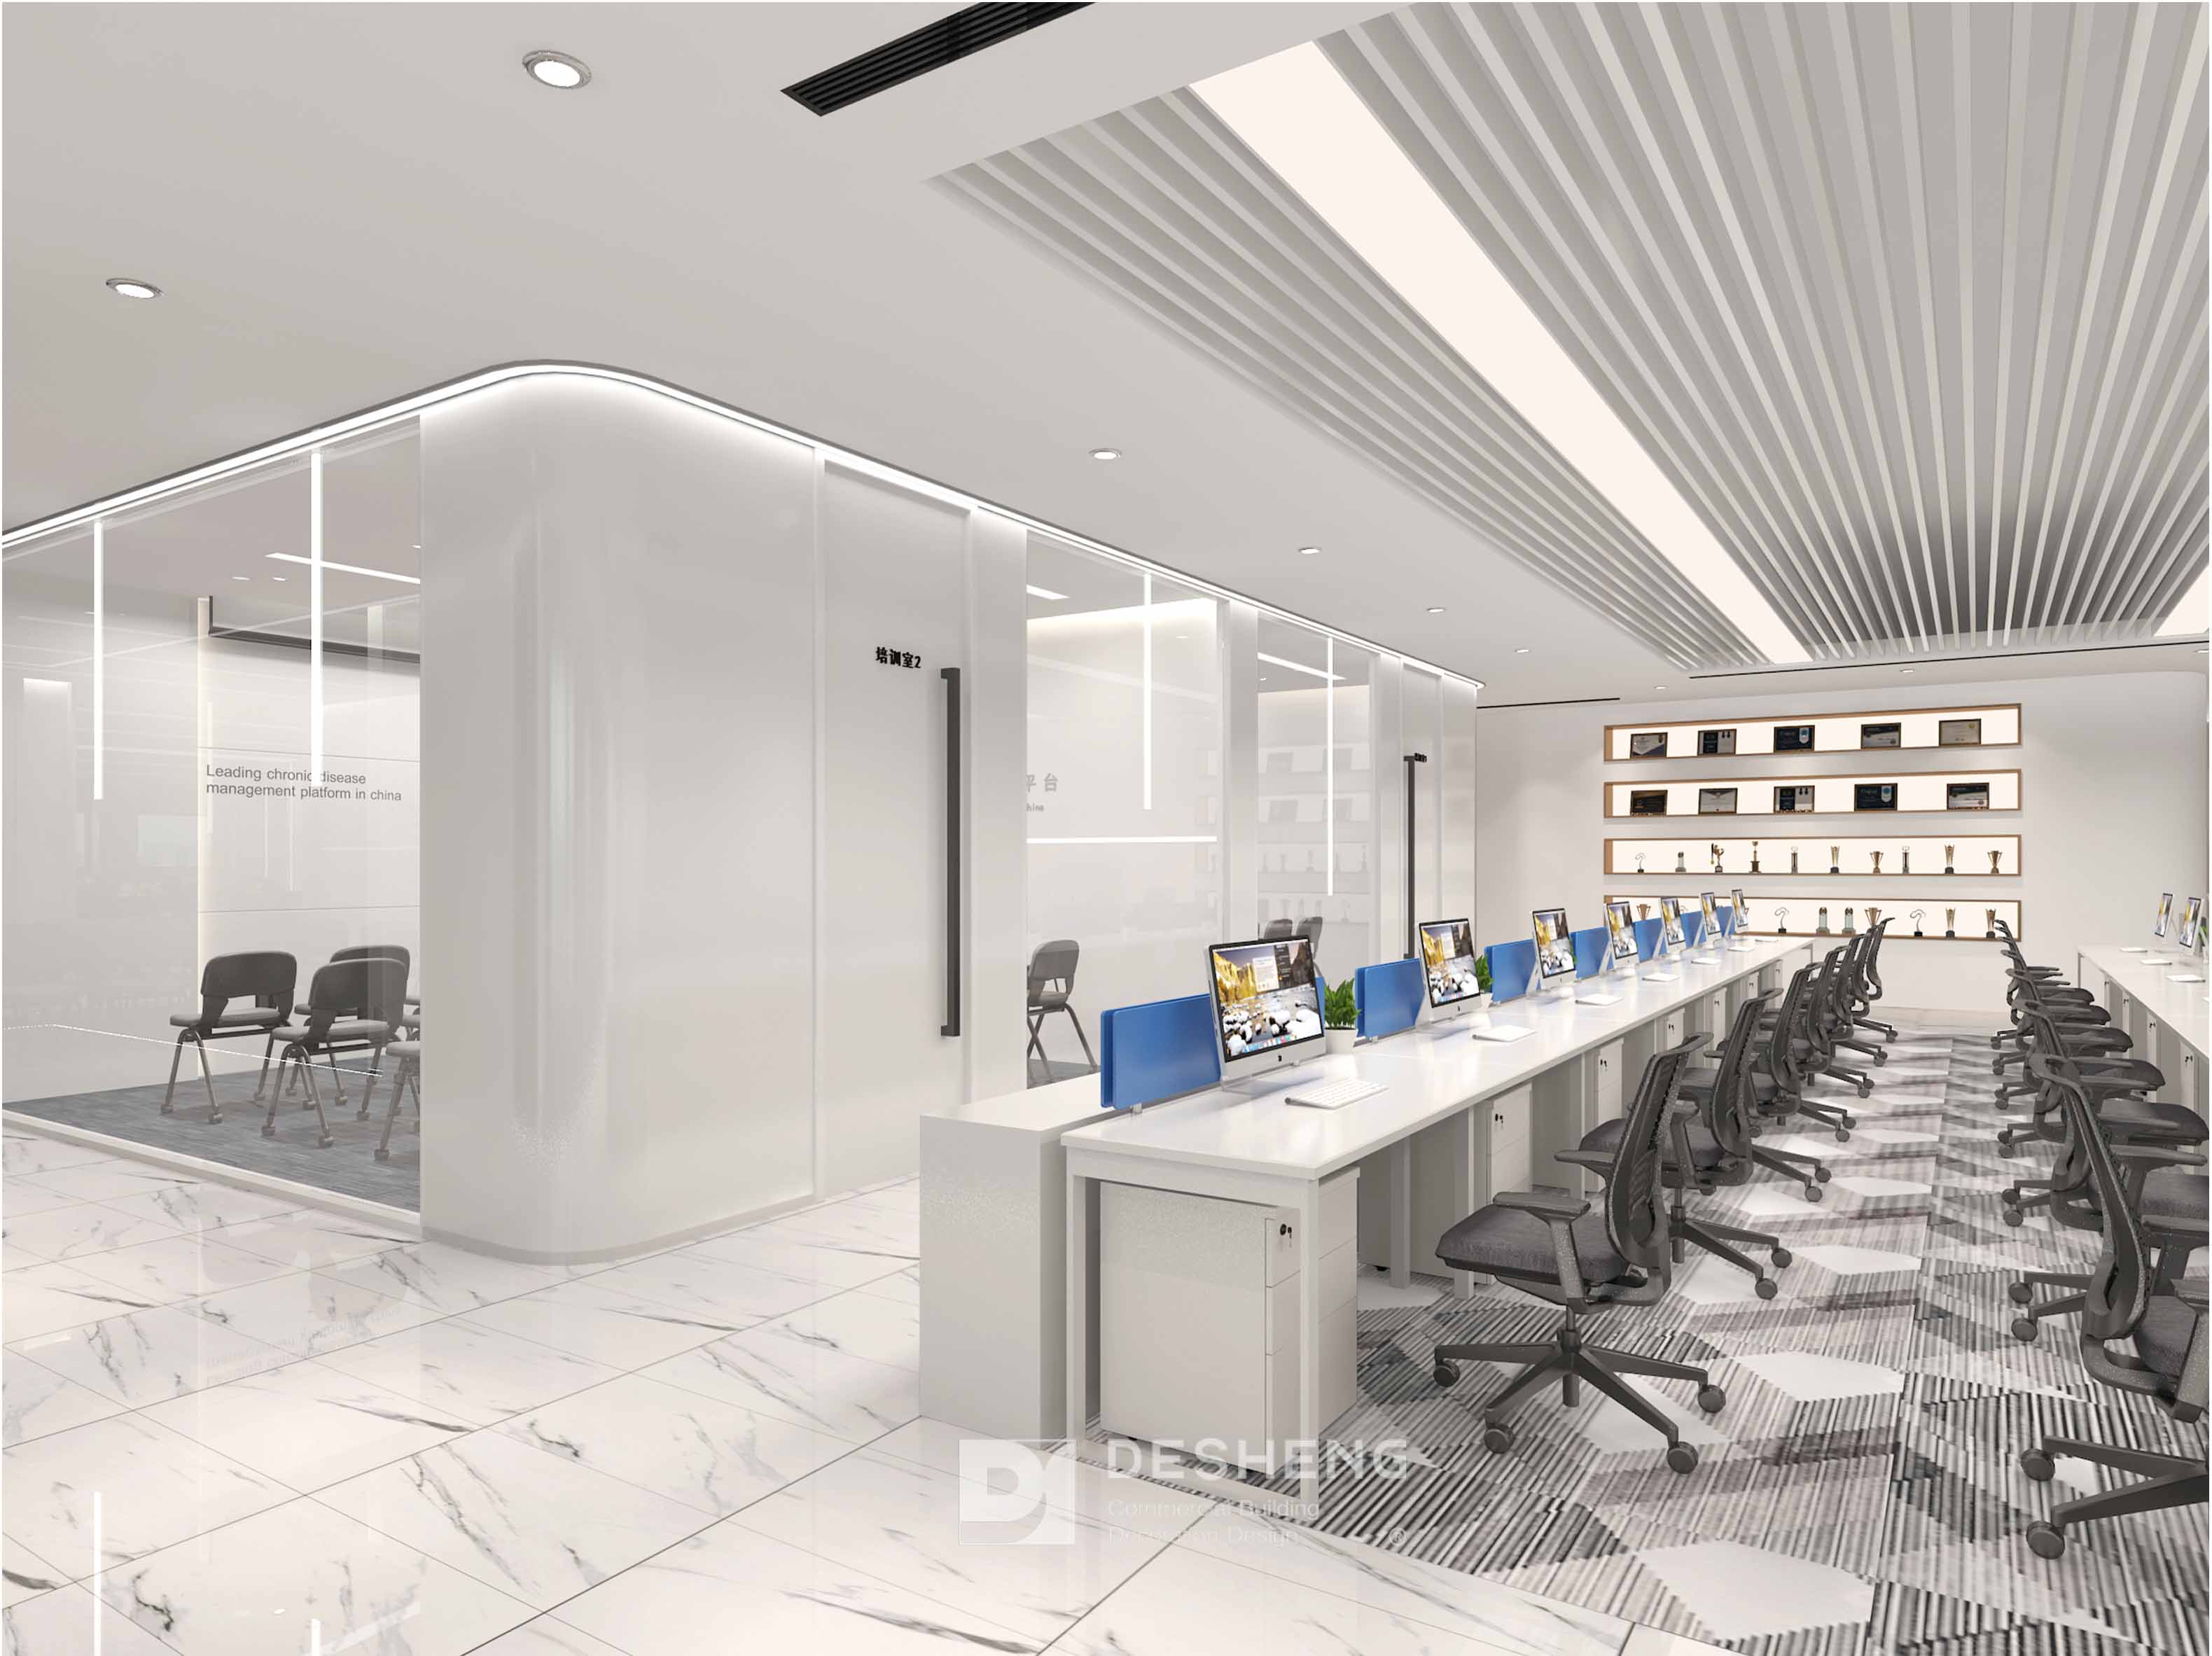 医云科技公司办公室装修效果图：从“医疗健康”与“创新科技”出发，采用简约的设计给人以简洁、清爽的舒适感受